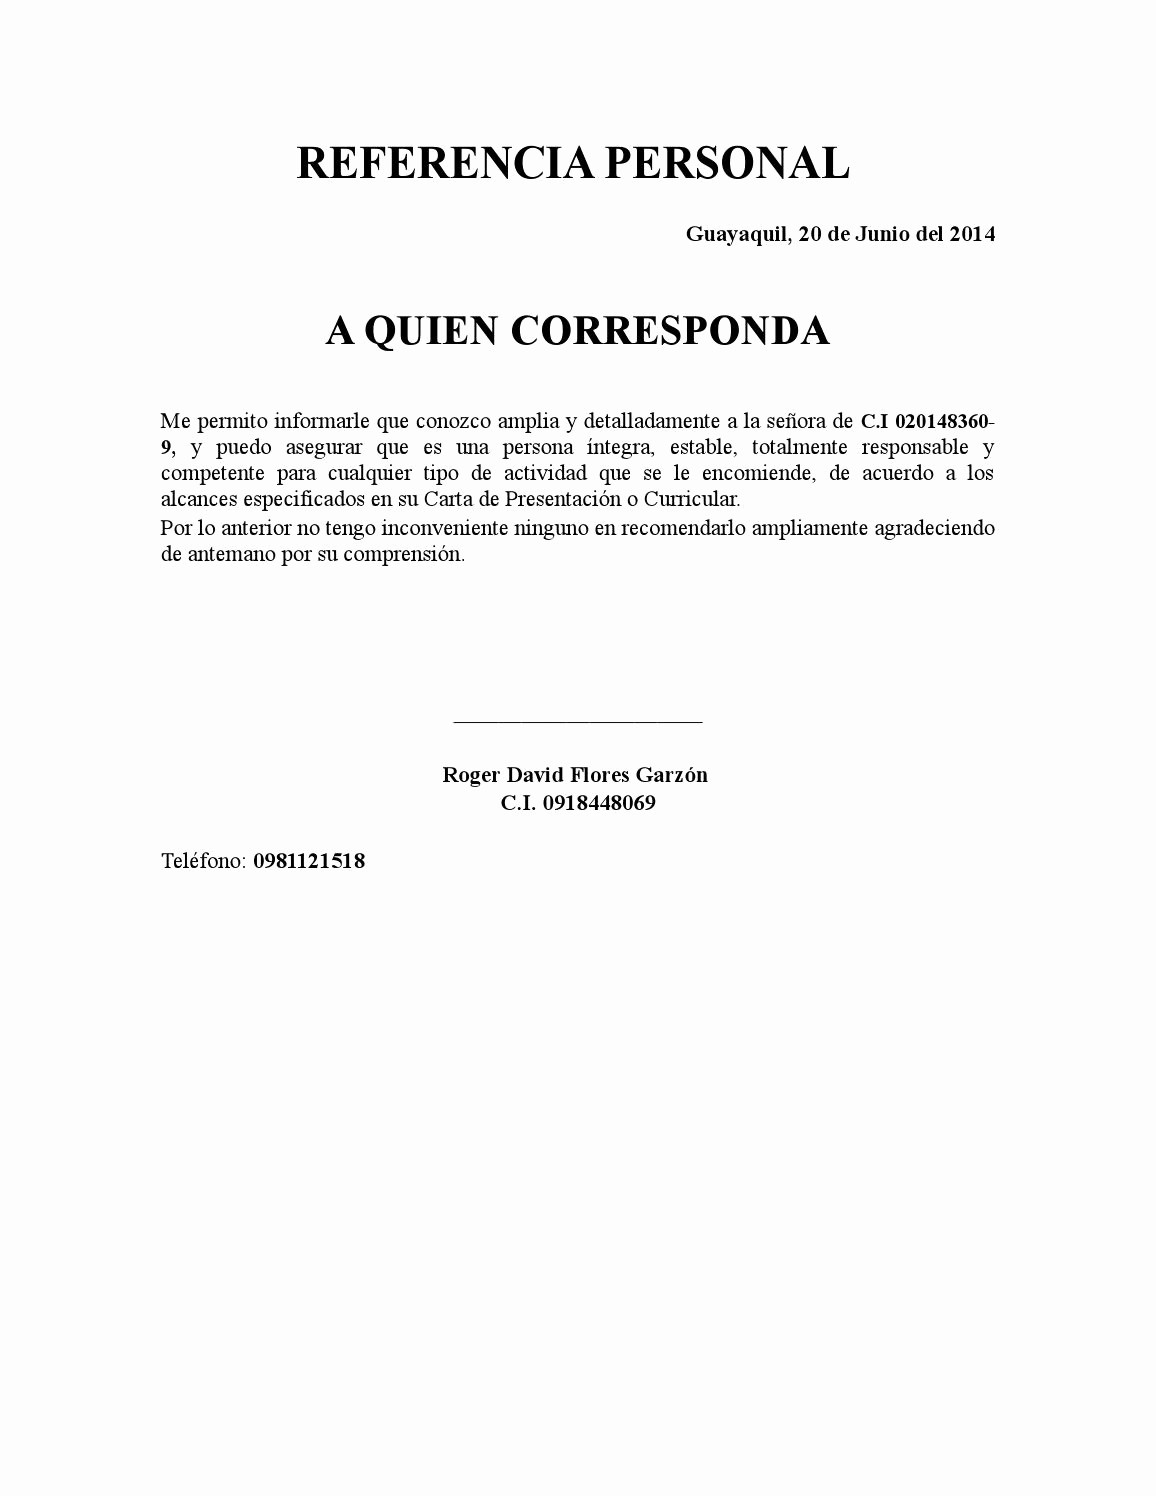 Cartas De Referencia De Trabajo Elegant Referencia Personal Copia by Roger David Flores Garzon issuu